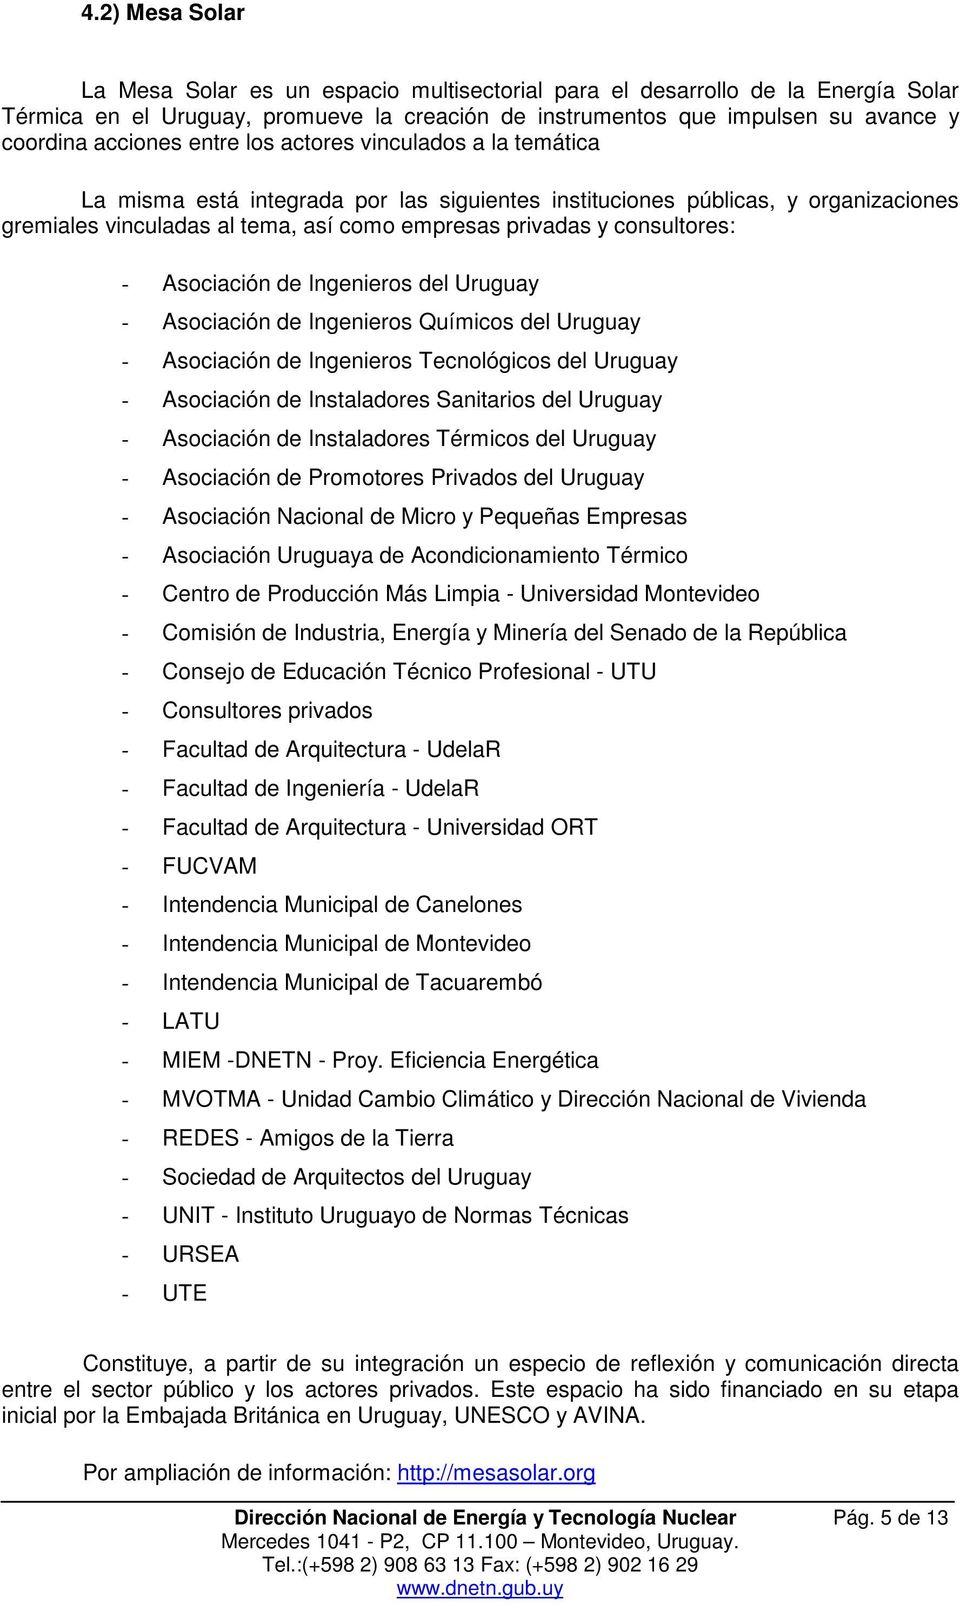 consultores: - Asociación de Ingenieros del Uruguay - Asociación de Ingenieros Químicos del Uruguay - Asociación de Ingenieros Tecnológicos del Uruguay - Asociación de Instaladores Sanitarios del